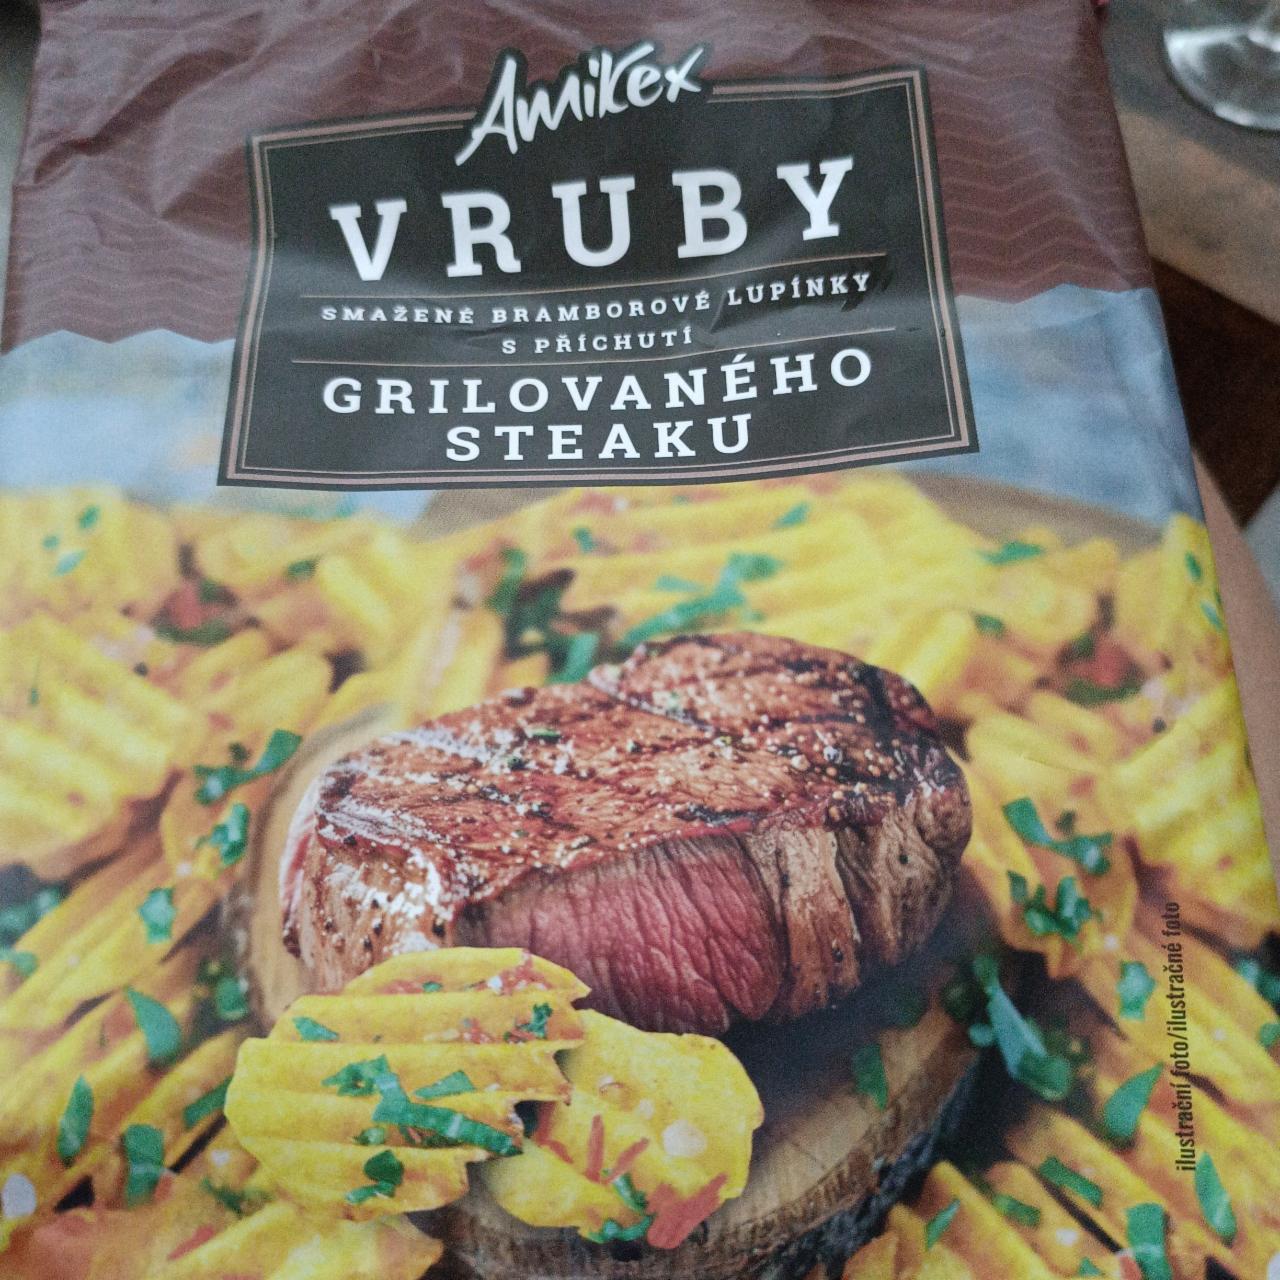 Fotografie - smažené bramborové lupínky grilovaný steak amikex